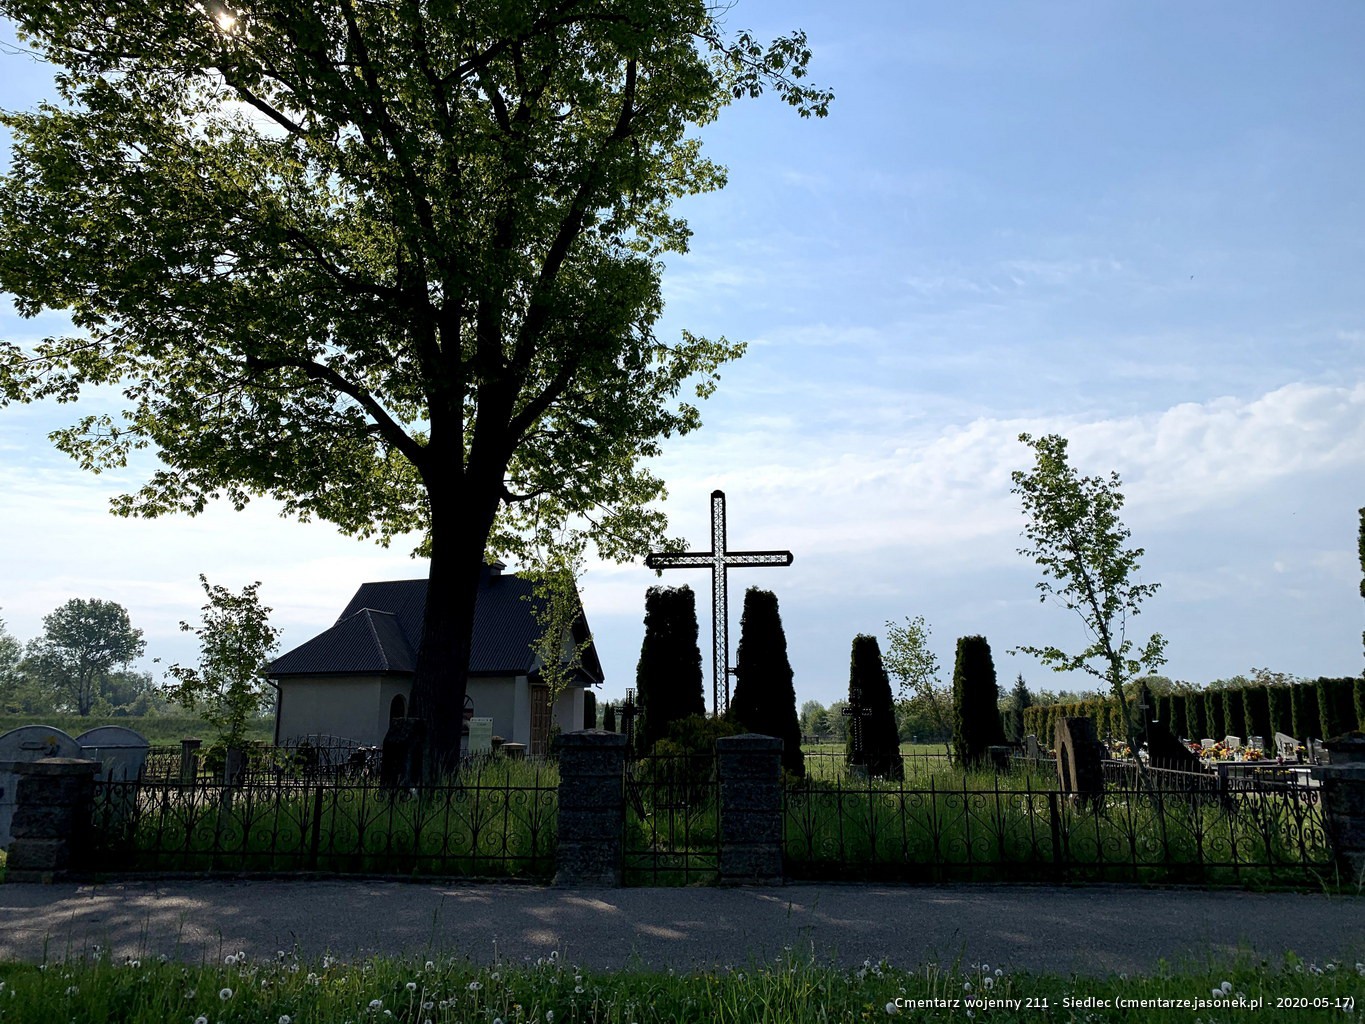 Cmentarz wojenny 211 - Siedlec